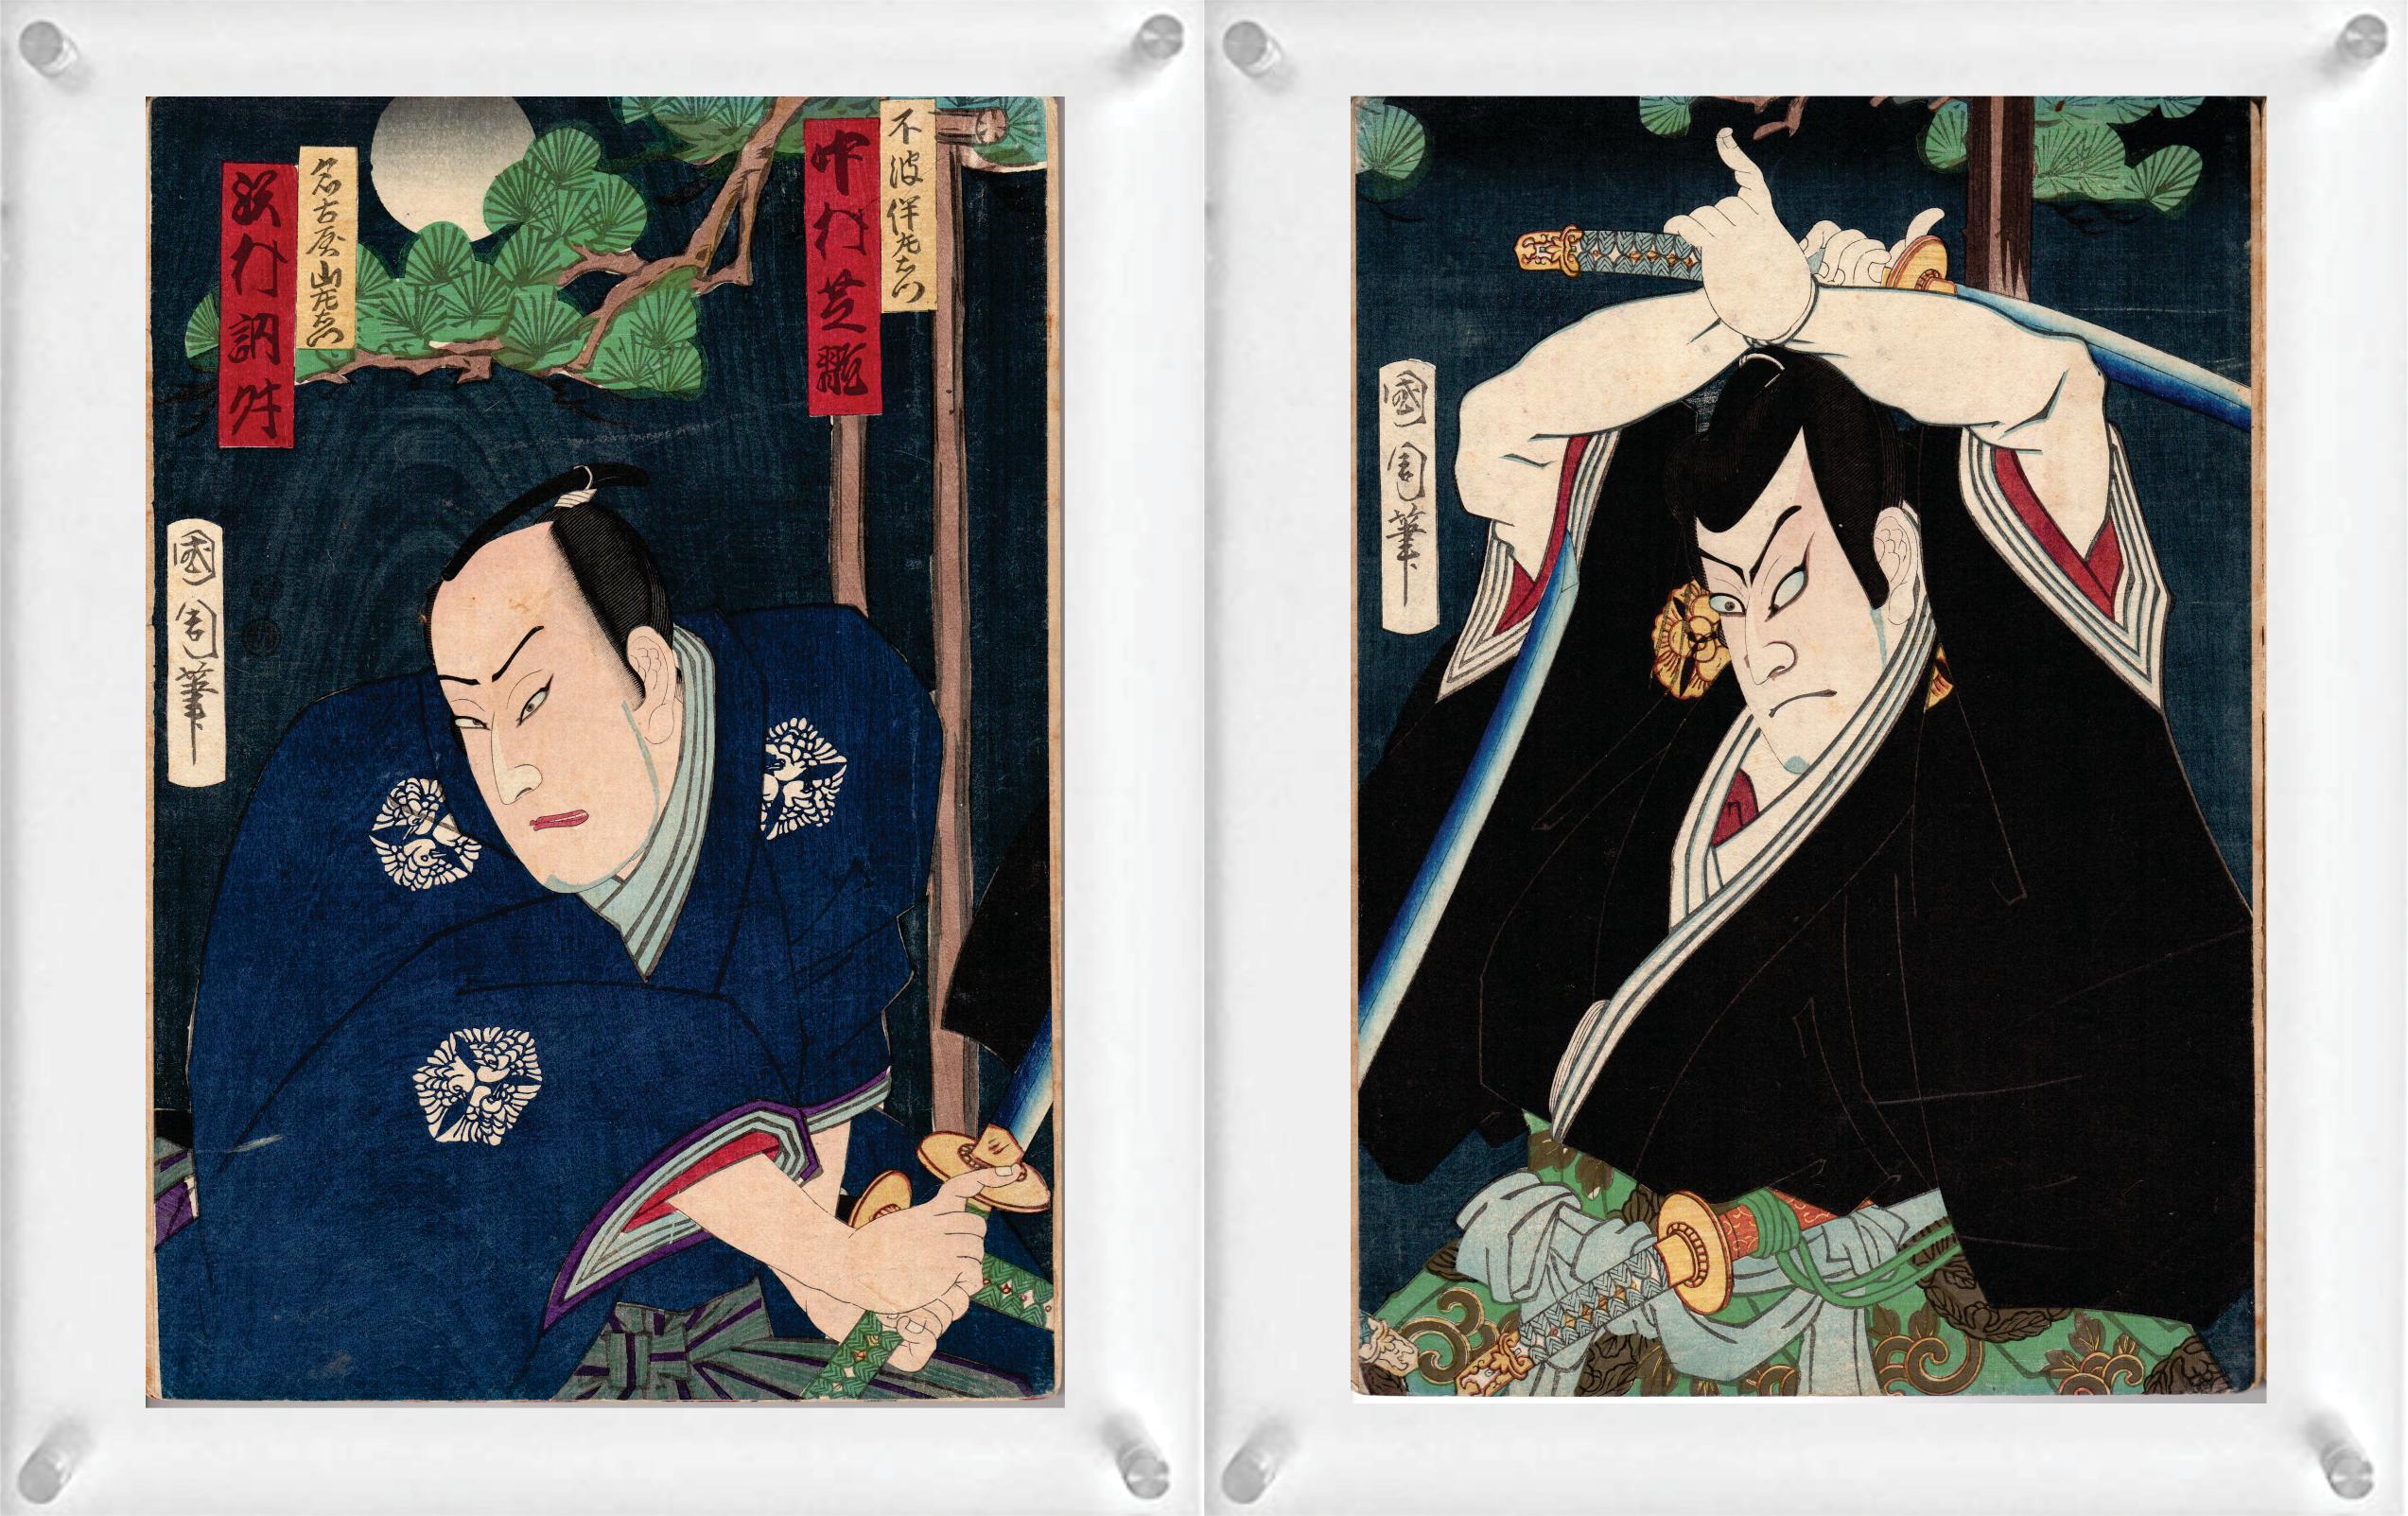 Vier japanische Farbholzschnitte (Doppelseite) von Toyohara Kunichika (Diptychon) und Shosai Ikkei - aus Sechsunddreißig Comics der berühmten Orte von Tokio.

Hinweis: Es handelt sich nur um zwei Holzschnitte mit 4 Bildern. Sie sind doppelseitig mit